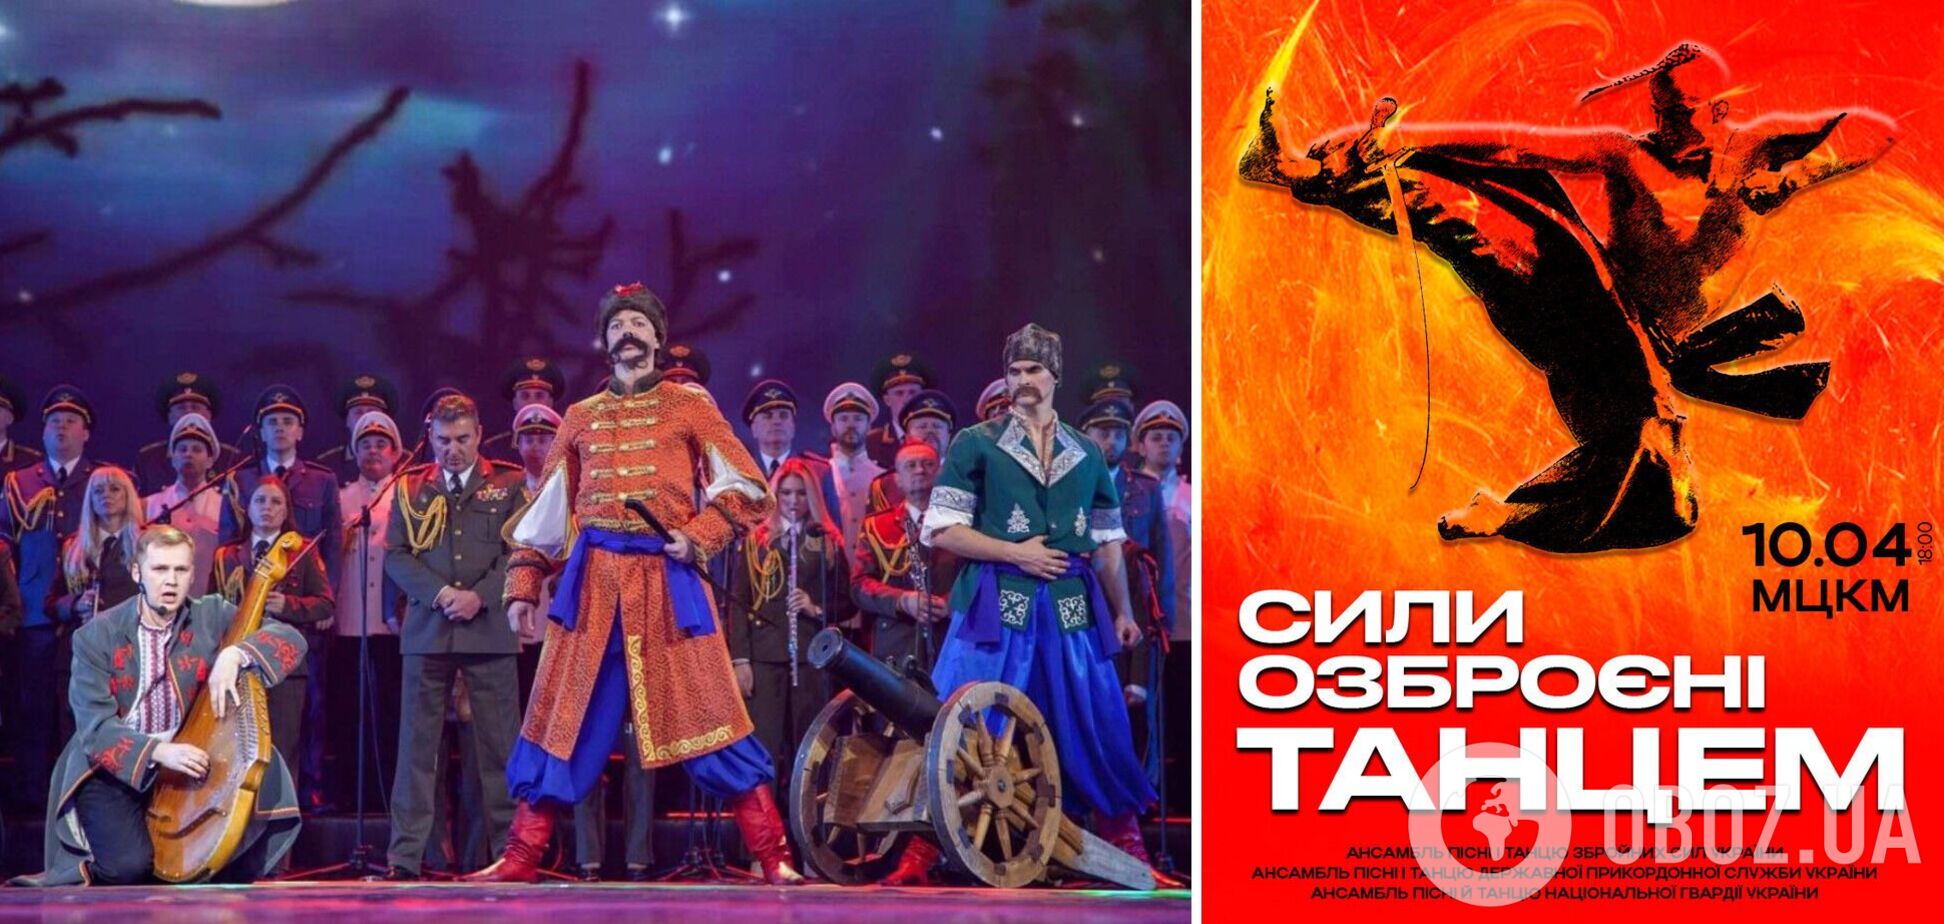 Сили, озброєні танцем: три найкращі військові ансамблі України дадуть грандіозний концерт у Києві